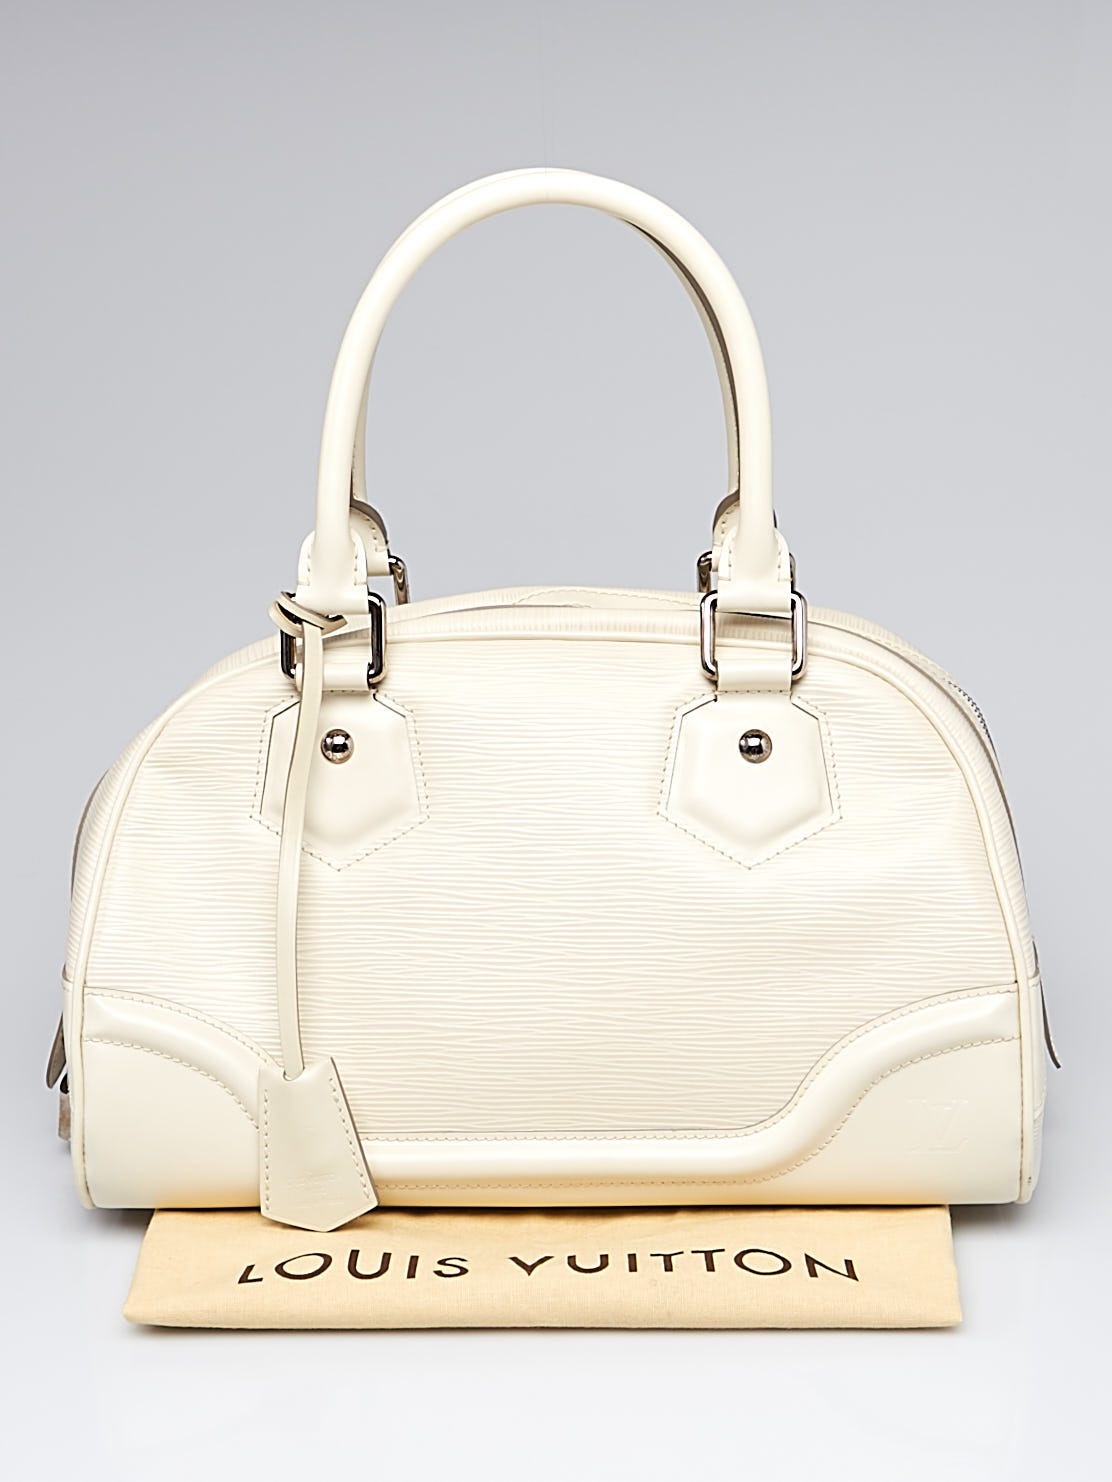 Louis Vuitton Montaigne – The Brand Collector